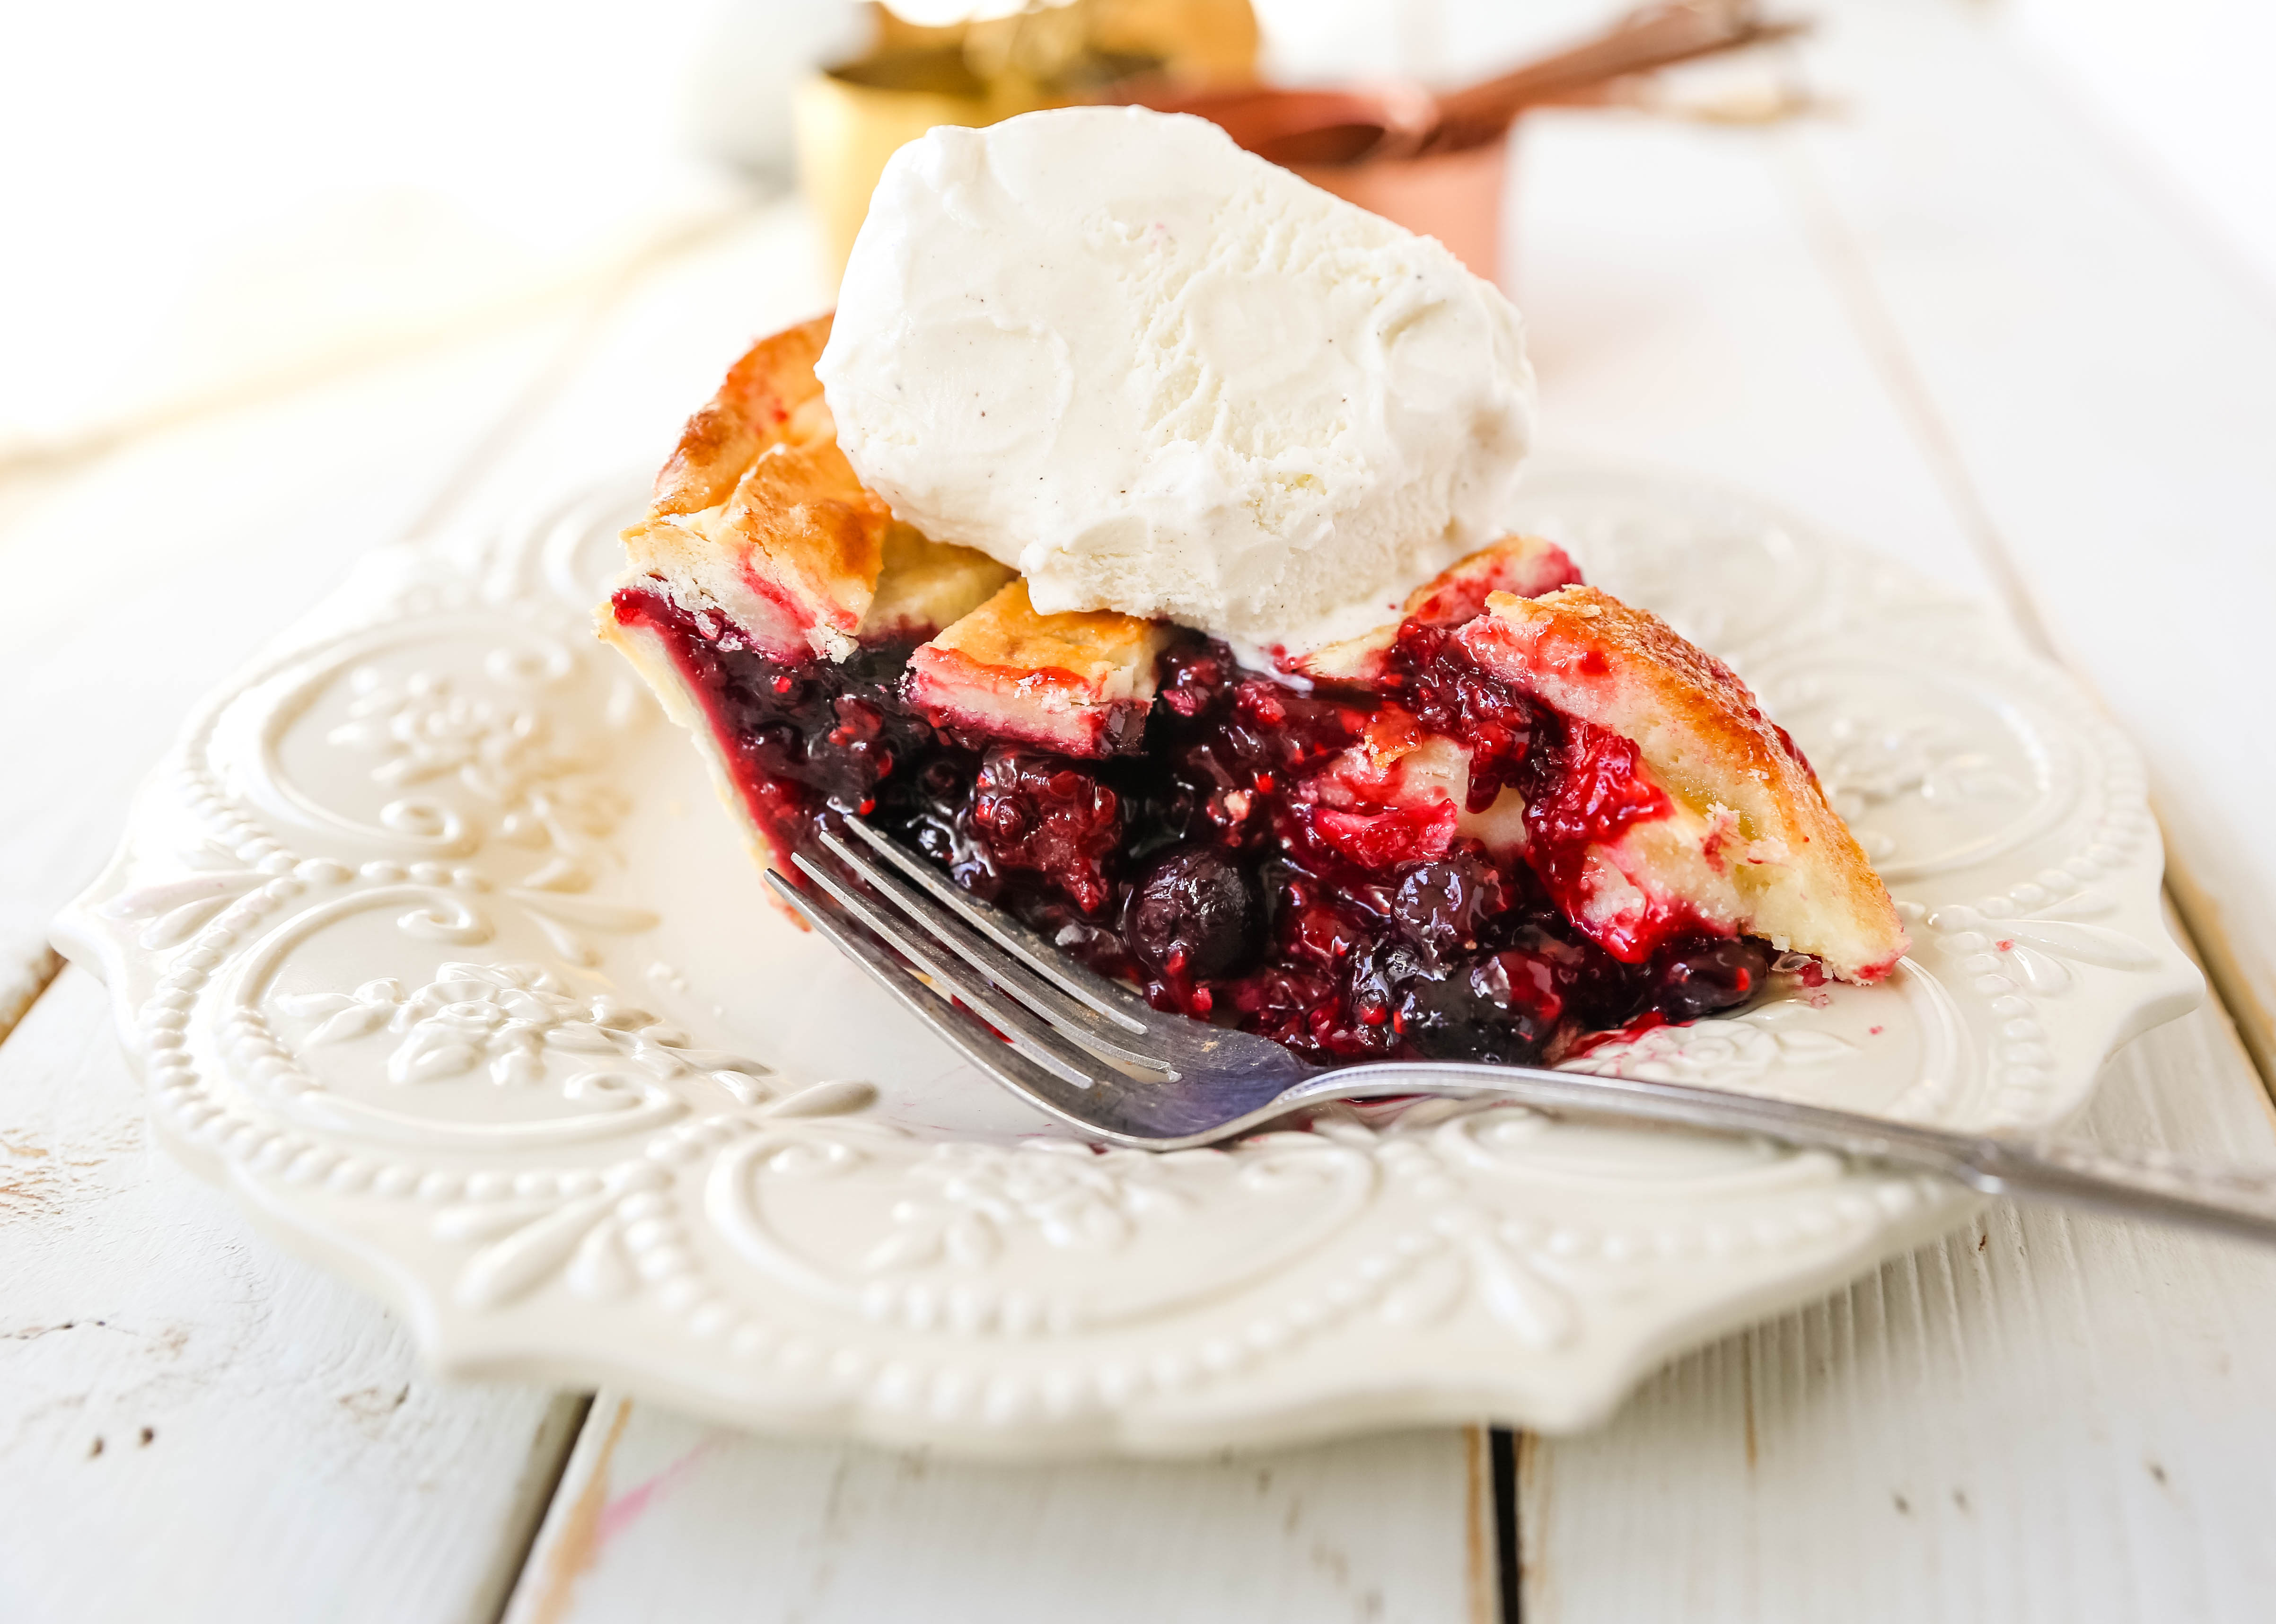 Triple Berry Pie. Najlepszy domowy przepis na ciasto jagodowe z maślaną skórką. Dodaj do niego lody waniliowe i masz idealny deser jagodowy! The best berry pie recipe. www.modernhoney.com #berrypie #pie #berries #tripleberrypie #thanksgiving